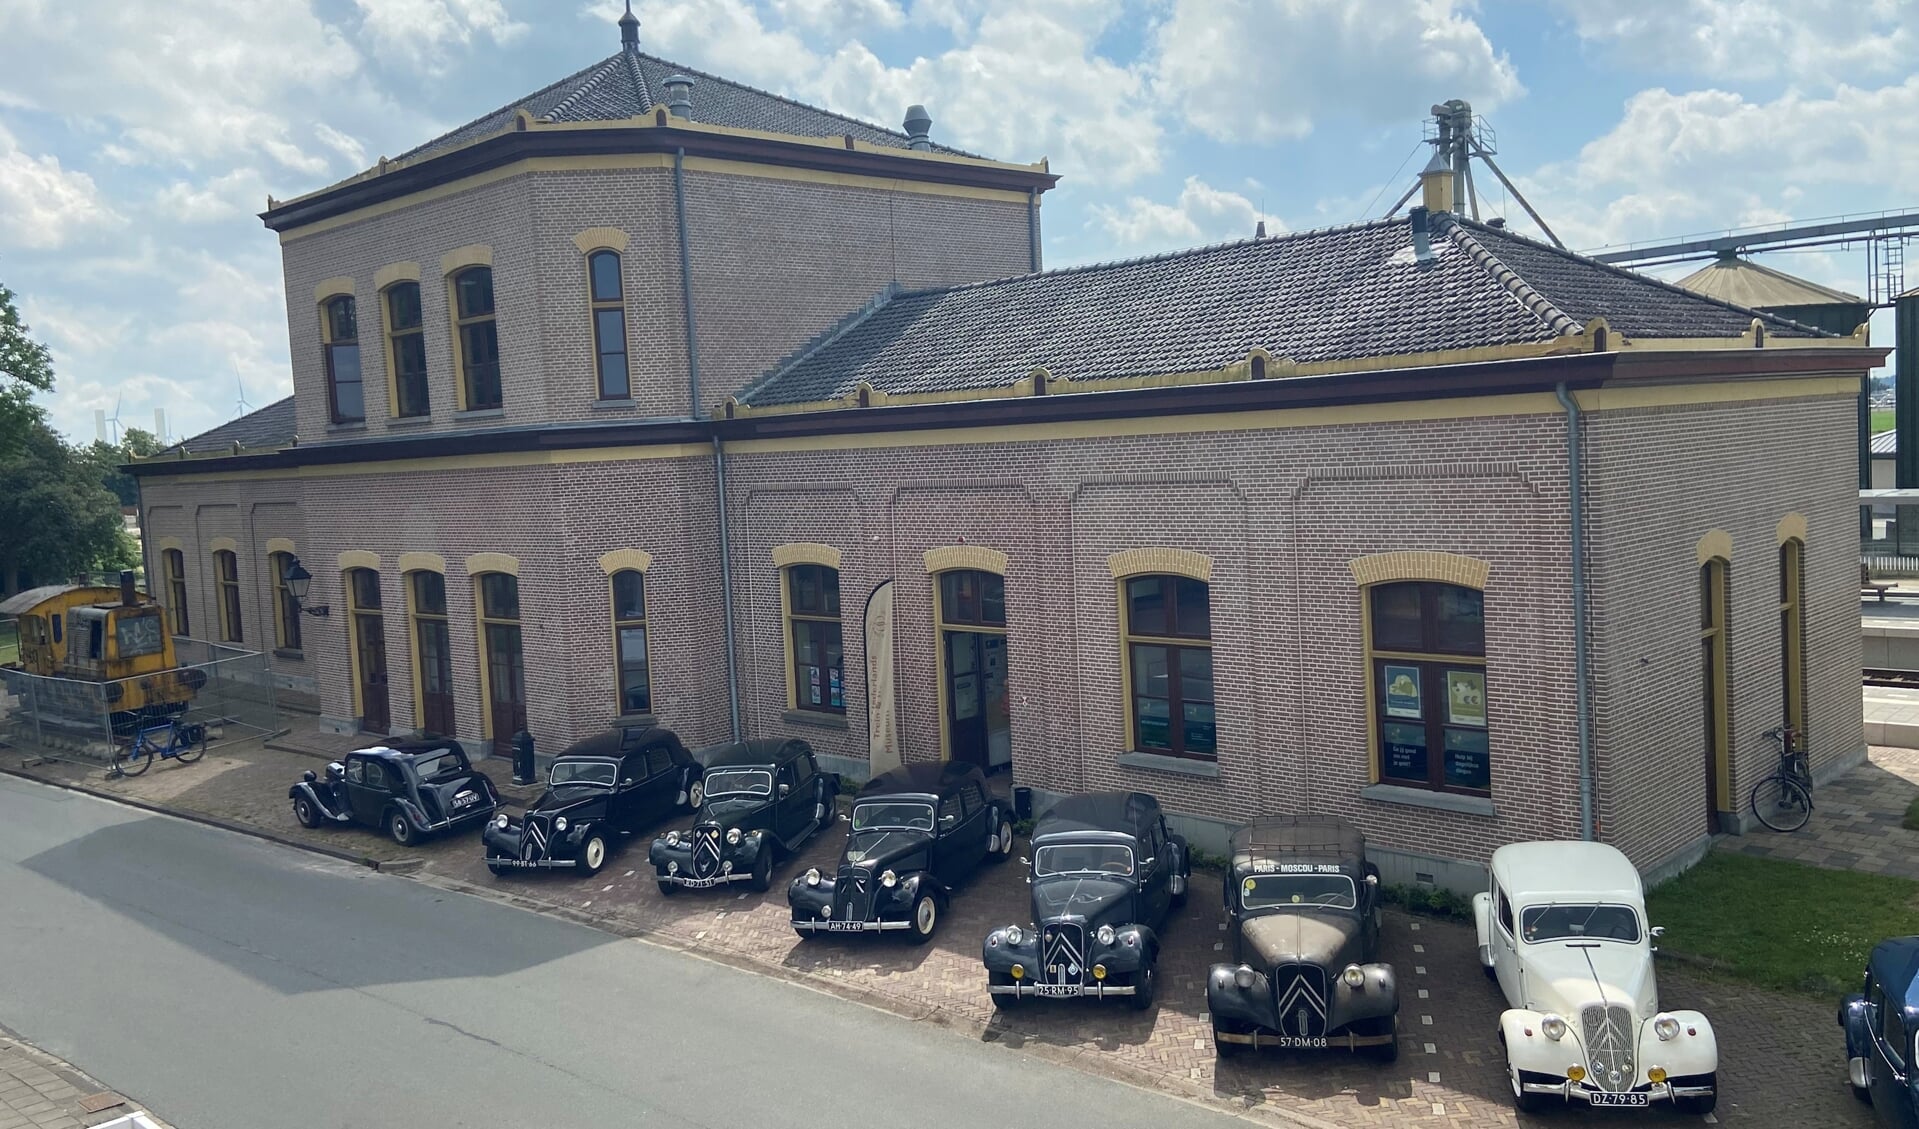 Historische Citroën-auto's voor het stationsgebouw in Zuidbroek. (foto A.B. Penning/NNTTM)